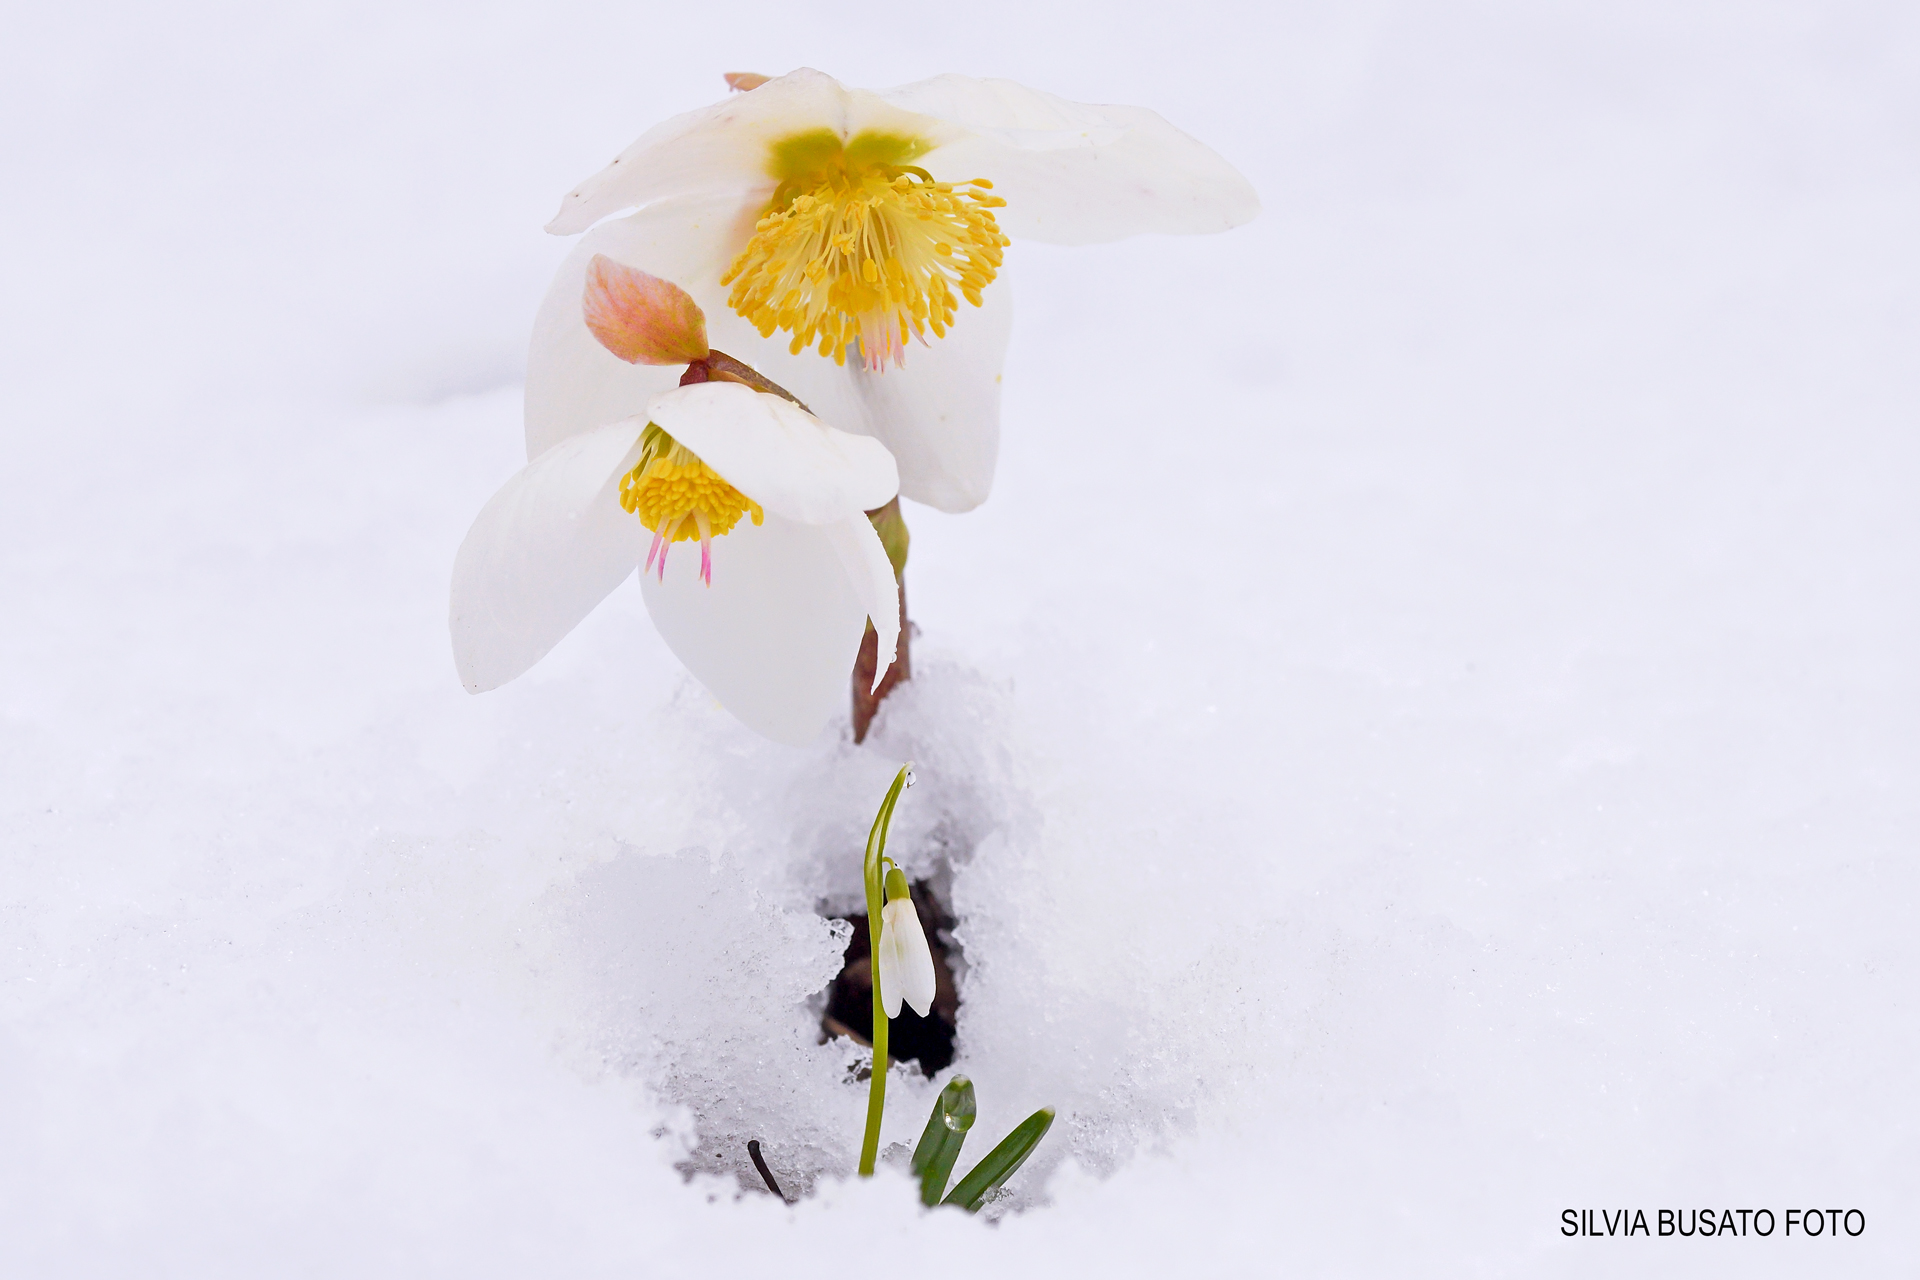 Snowdrop under the hellebore petals...